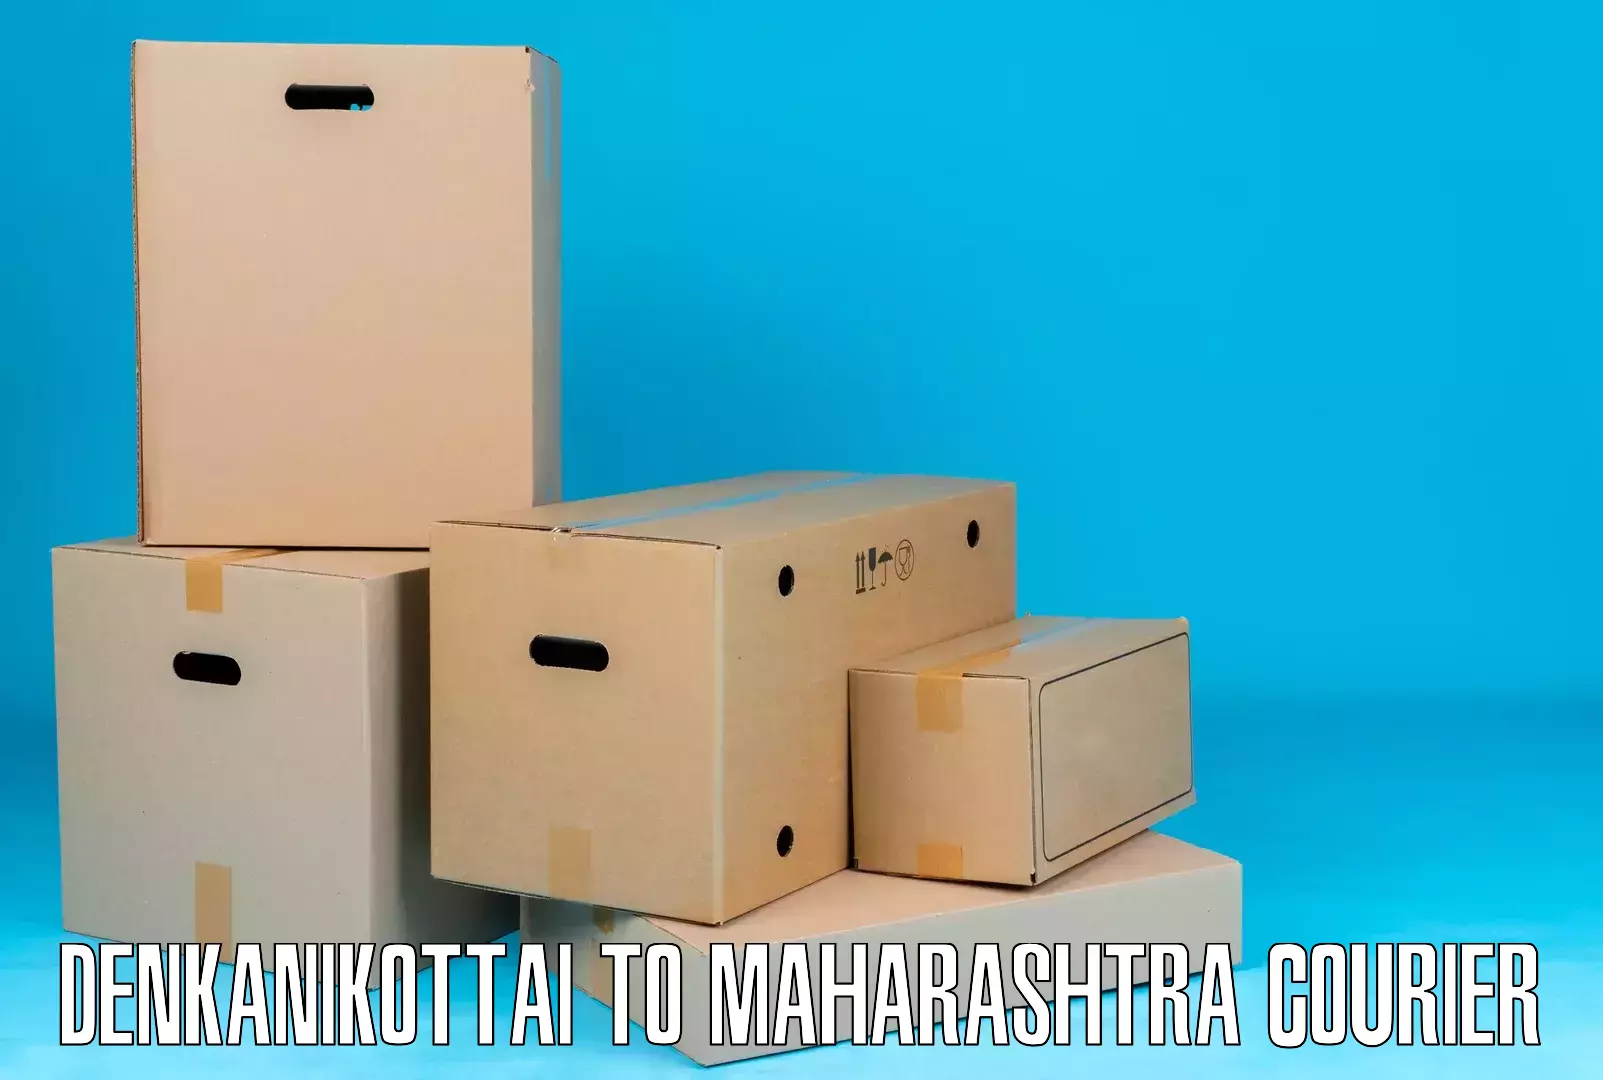 Reliable parcel services Denkanikottai to Satara